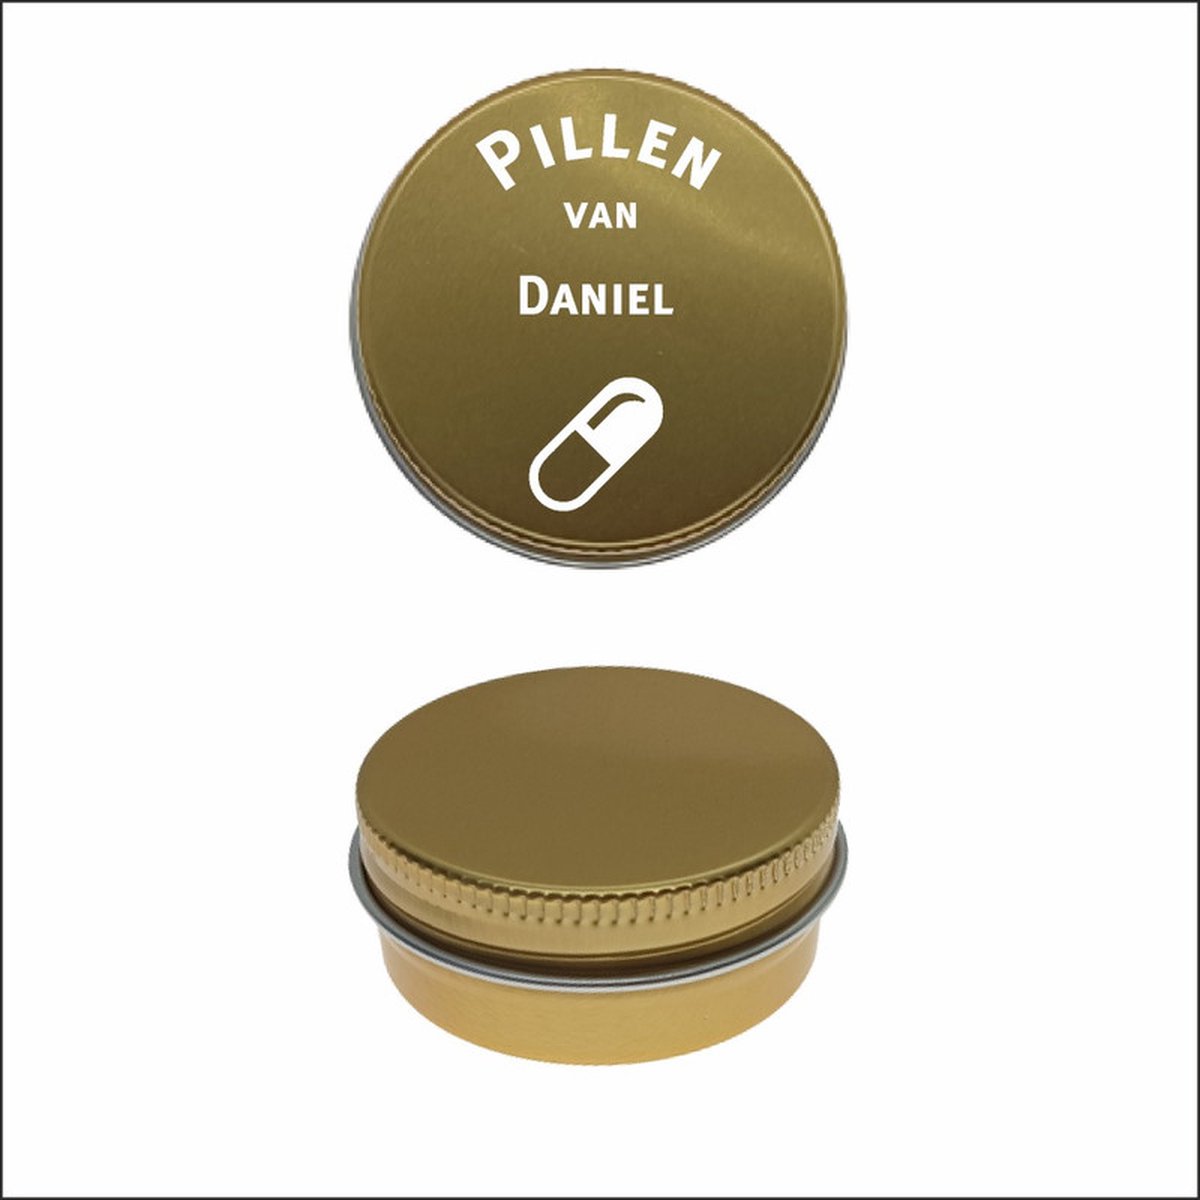 Pillen Blikje Met Naam Gravering - Daniel